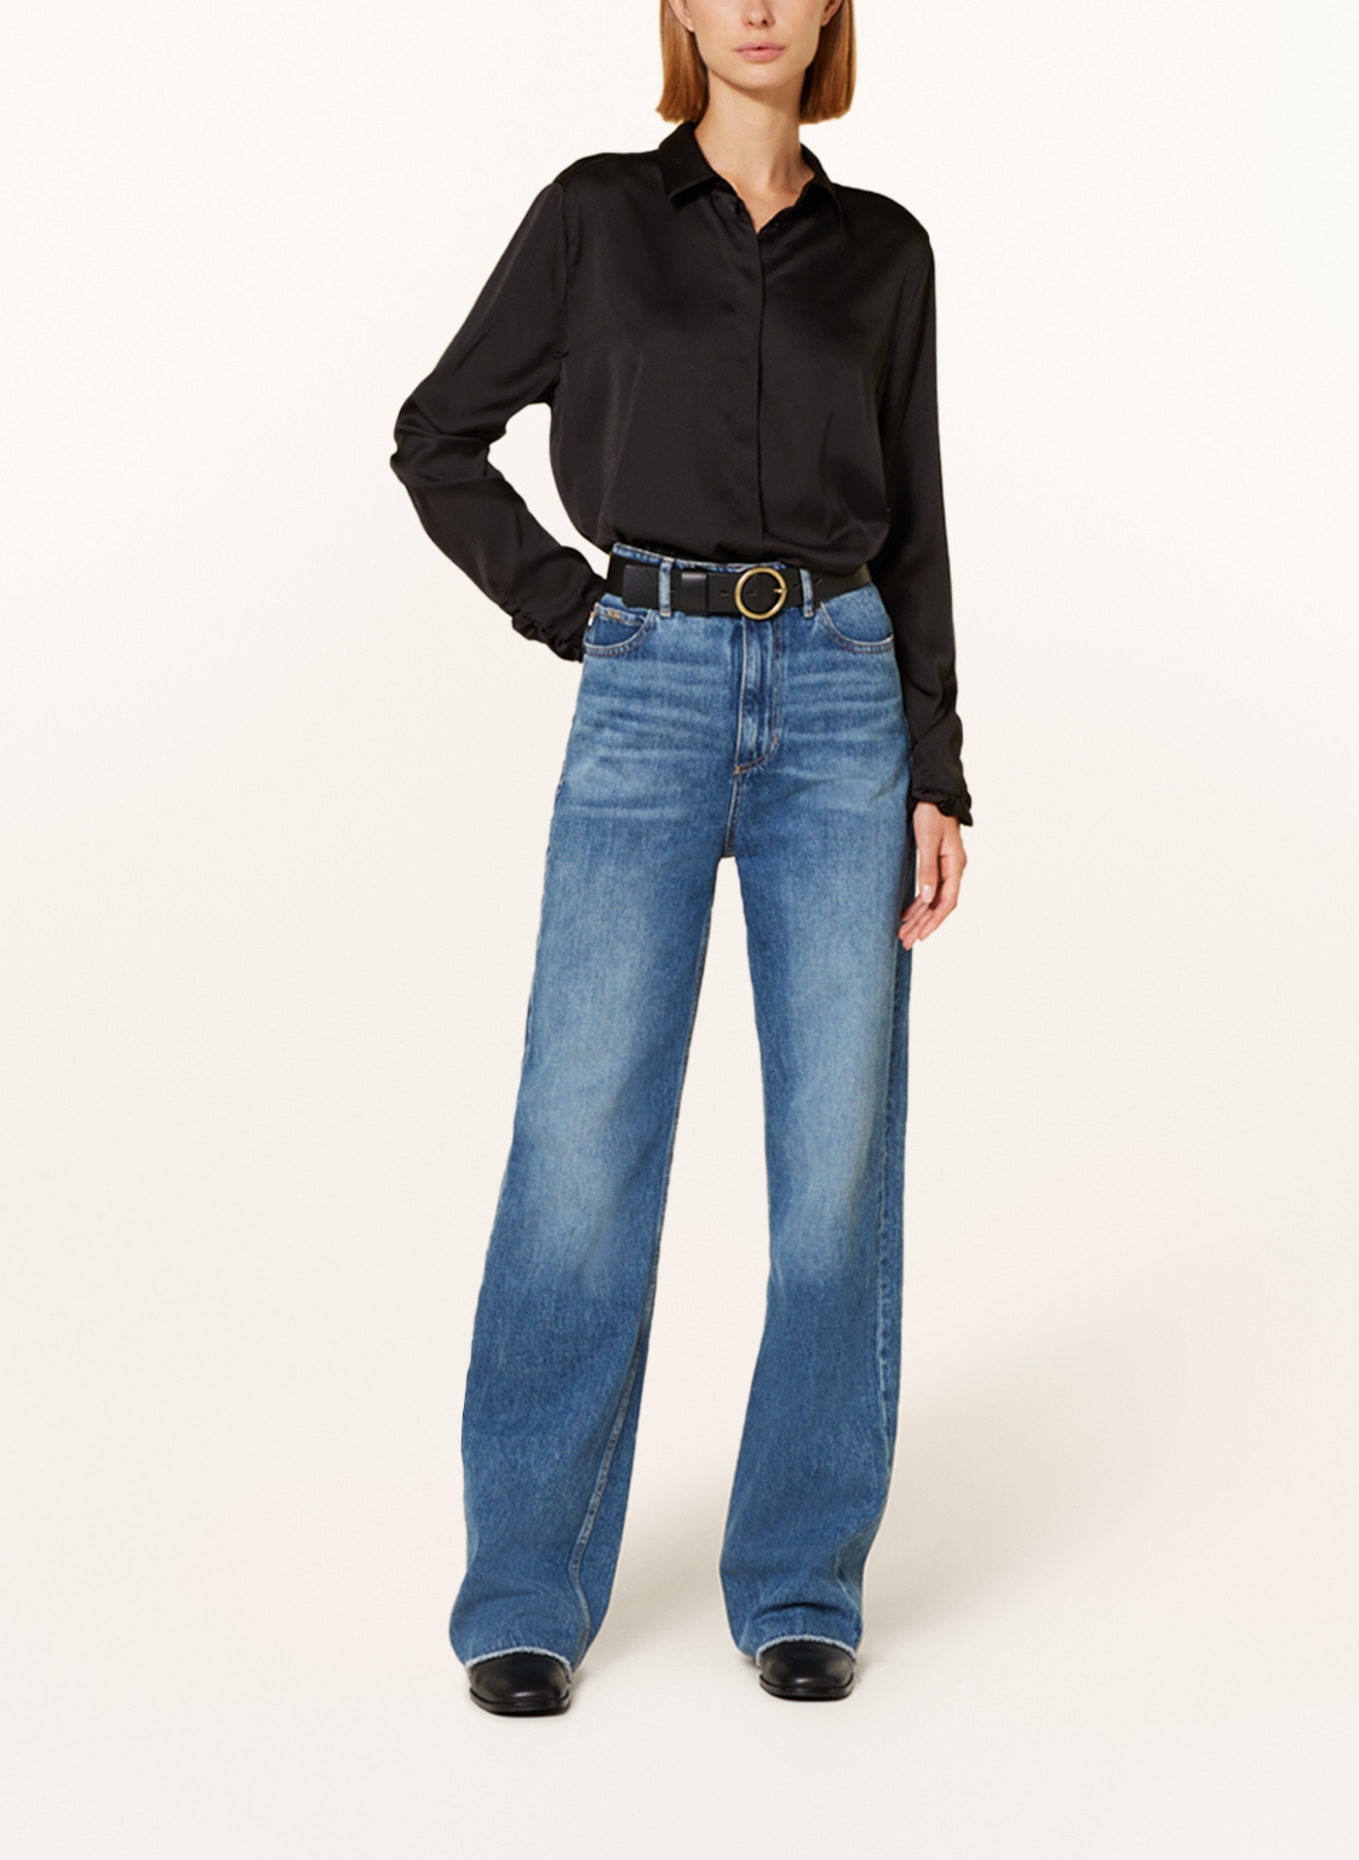 lilienfels Satin blouse, Color: BLACK (Image 2)